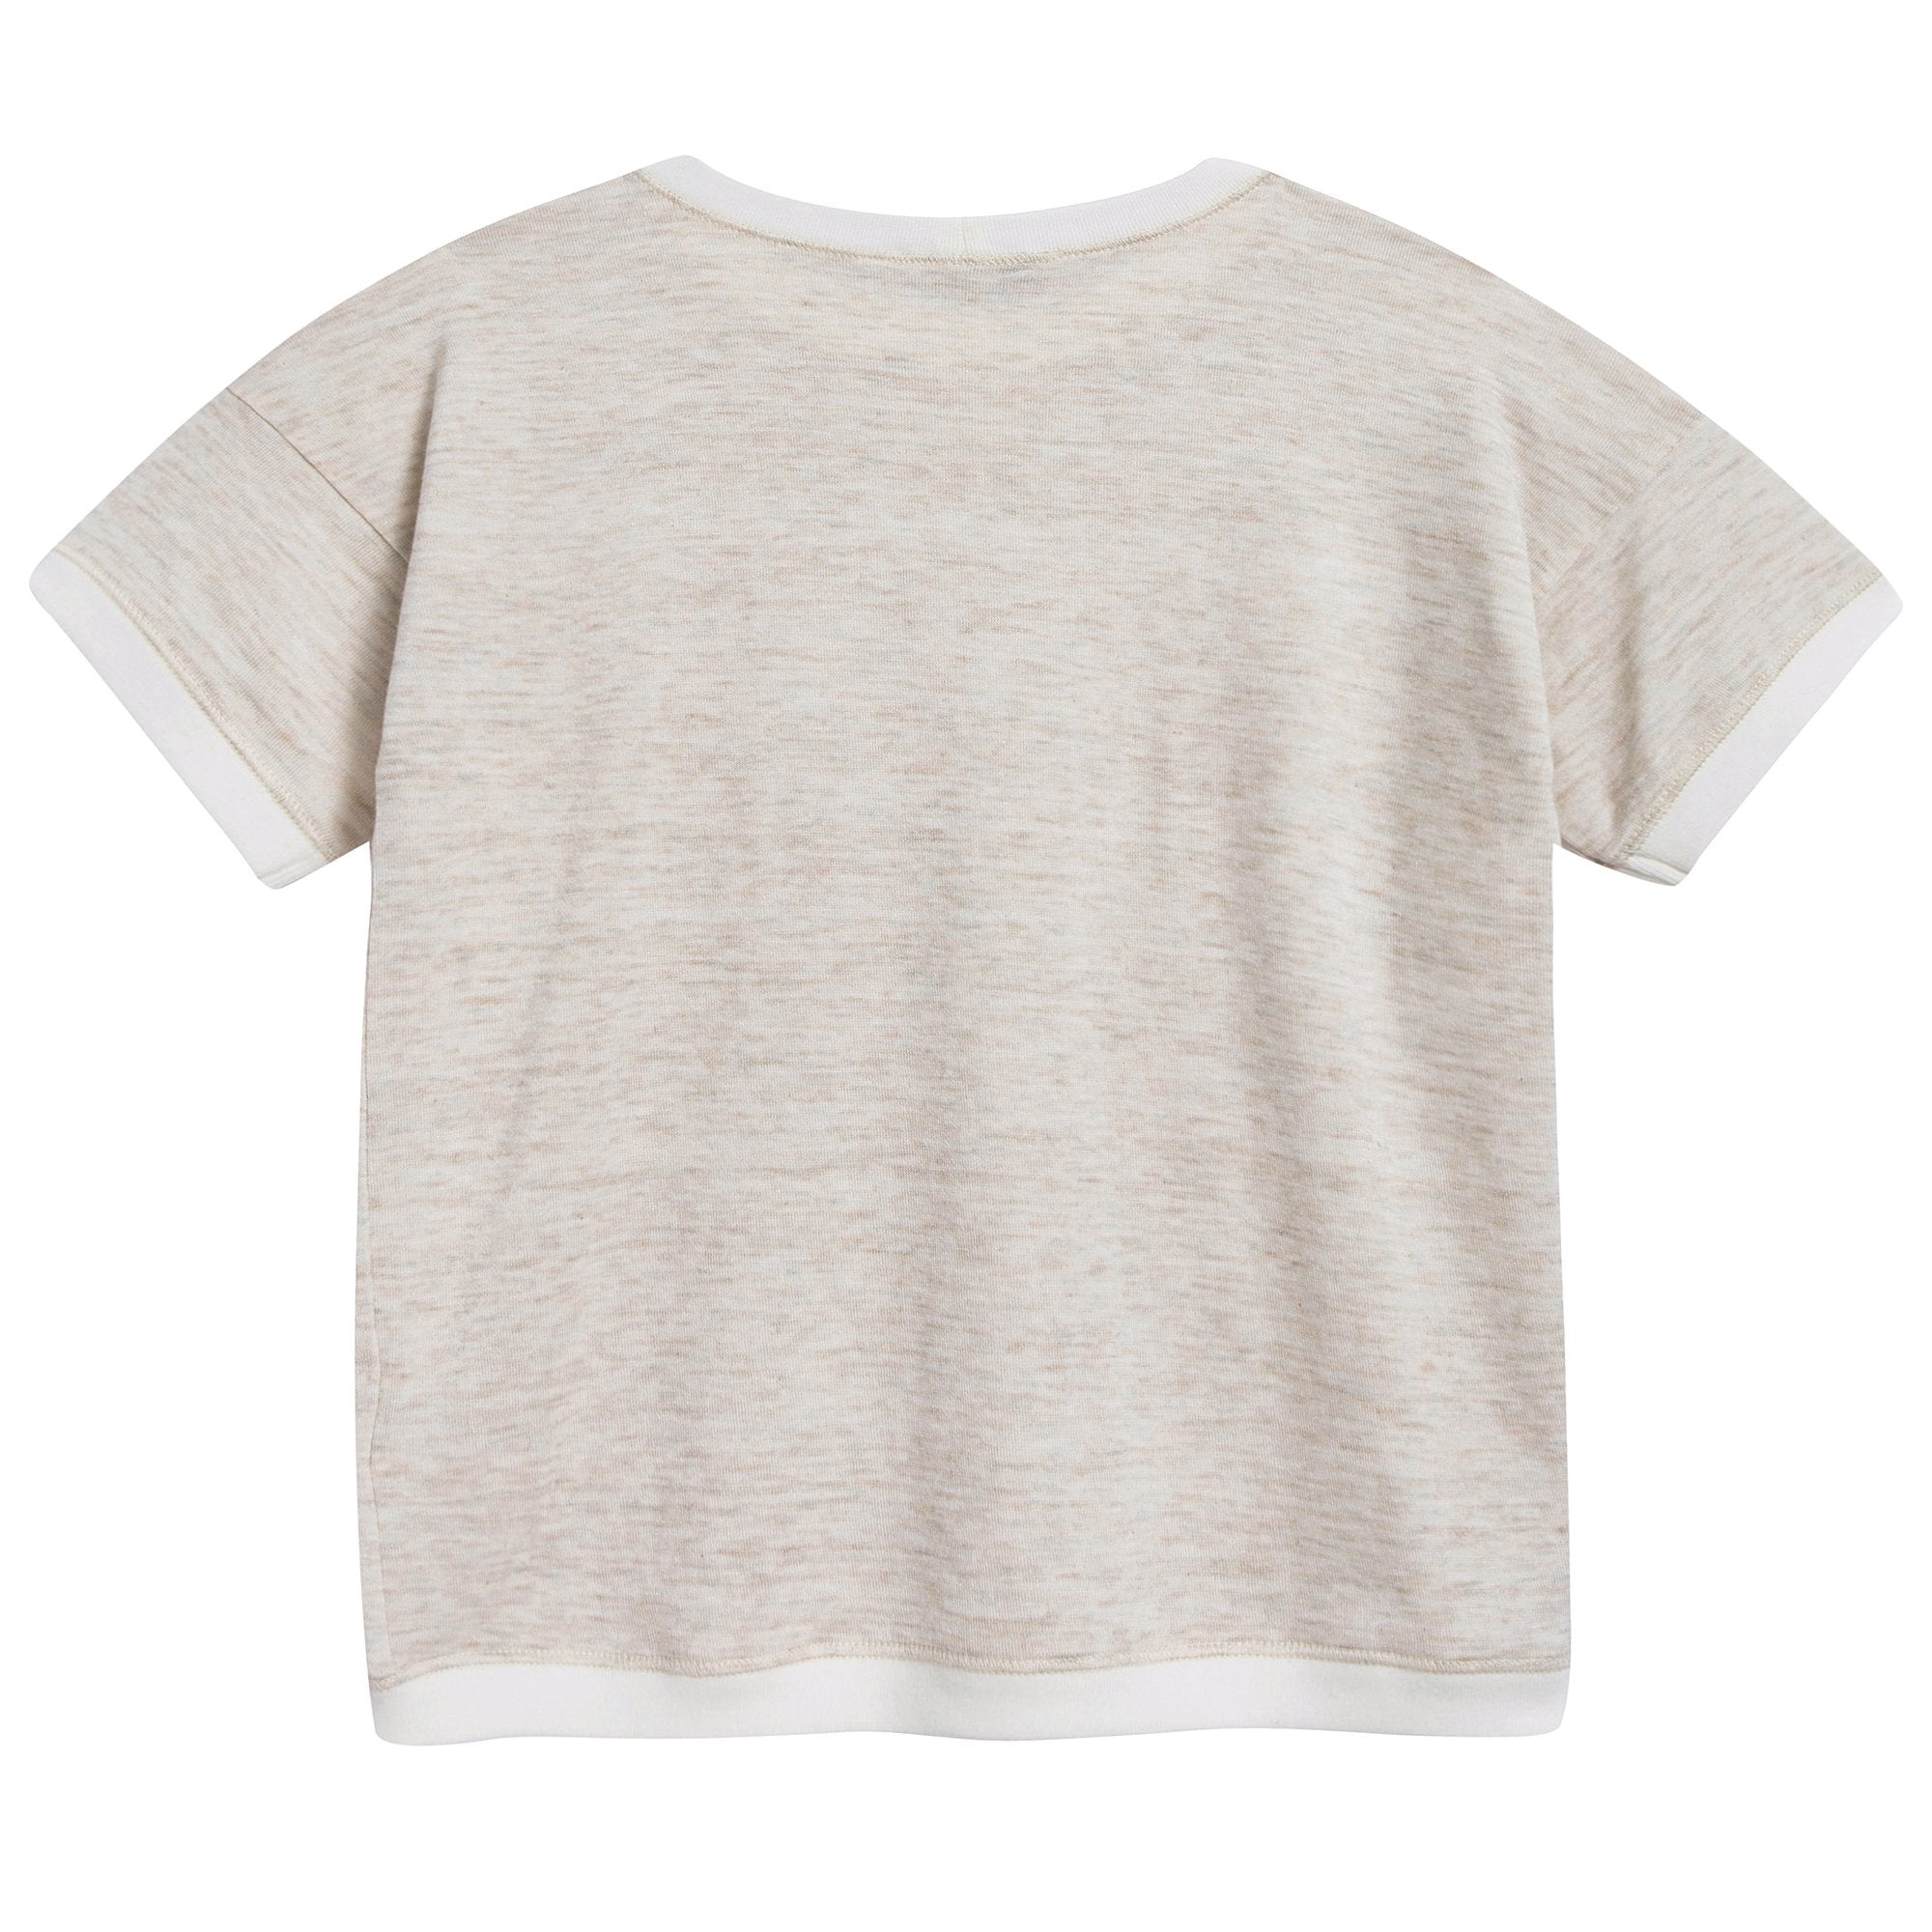 Girls & Boys Oatmeal Cotton Jersey T-Shirt